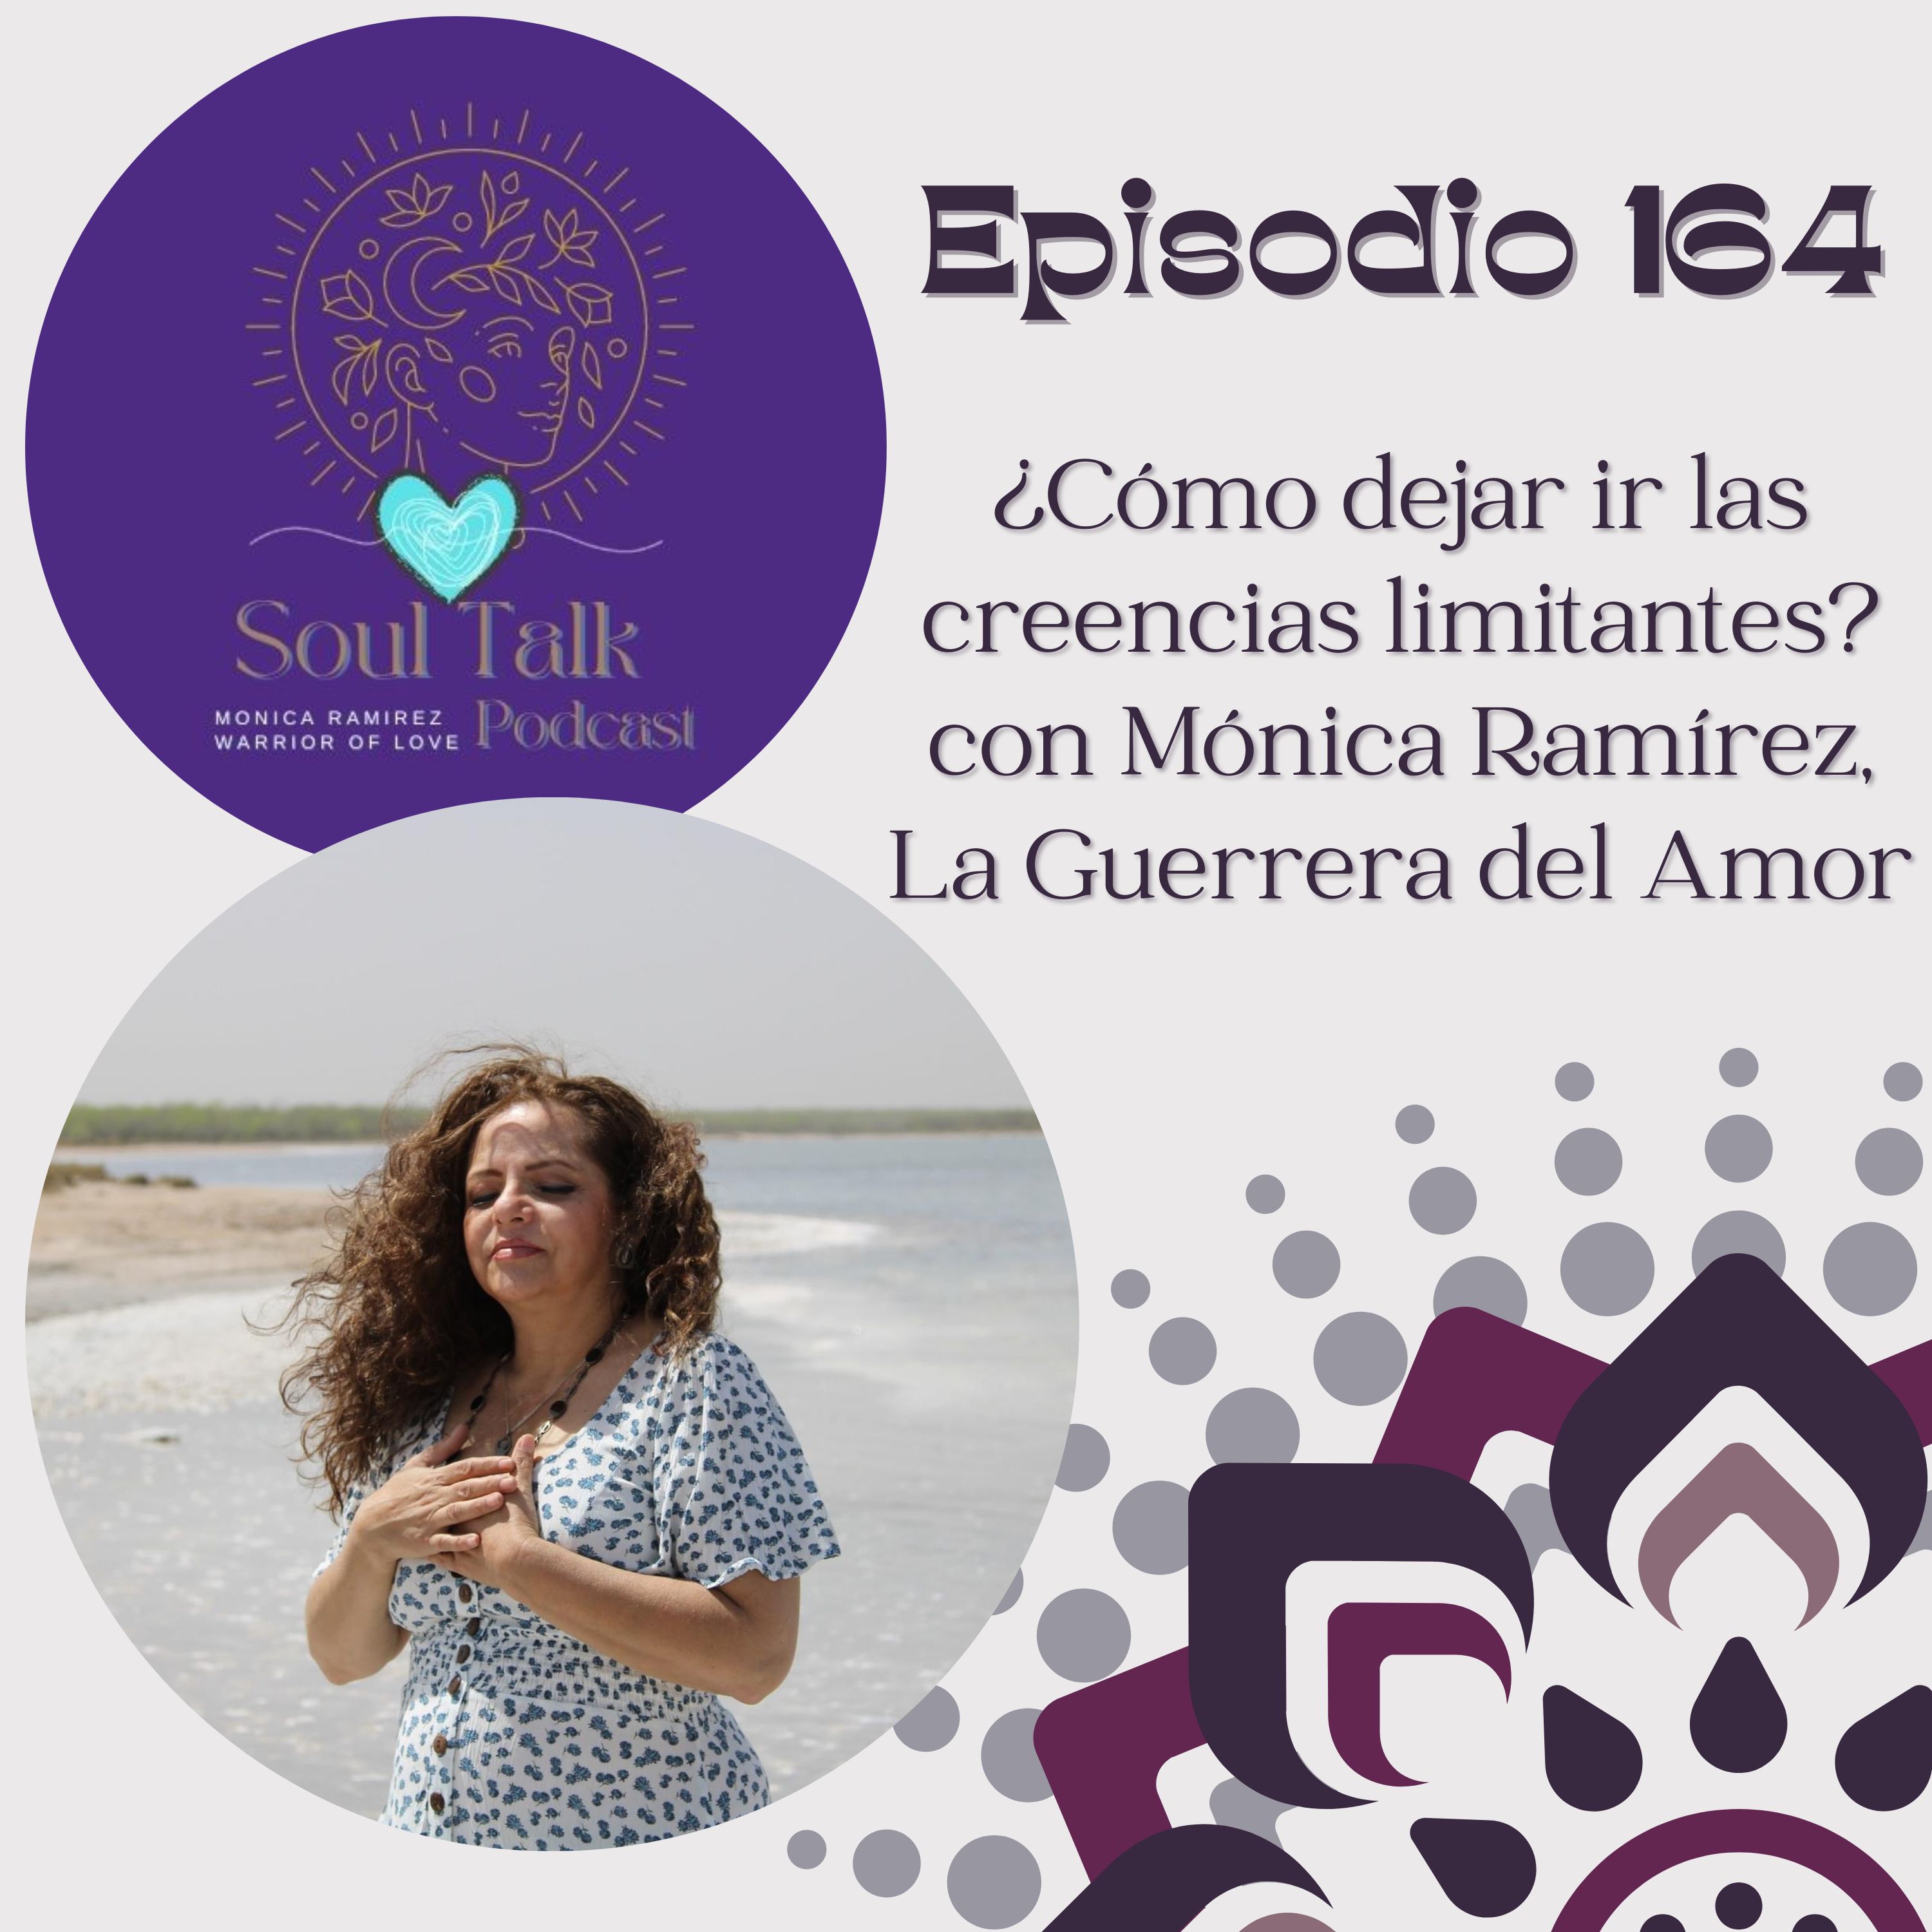 The Soul Talk Episode 164: ¿Cómo dejar ir las creencias limitantes? (episodio en español)